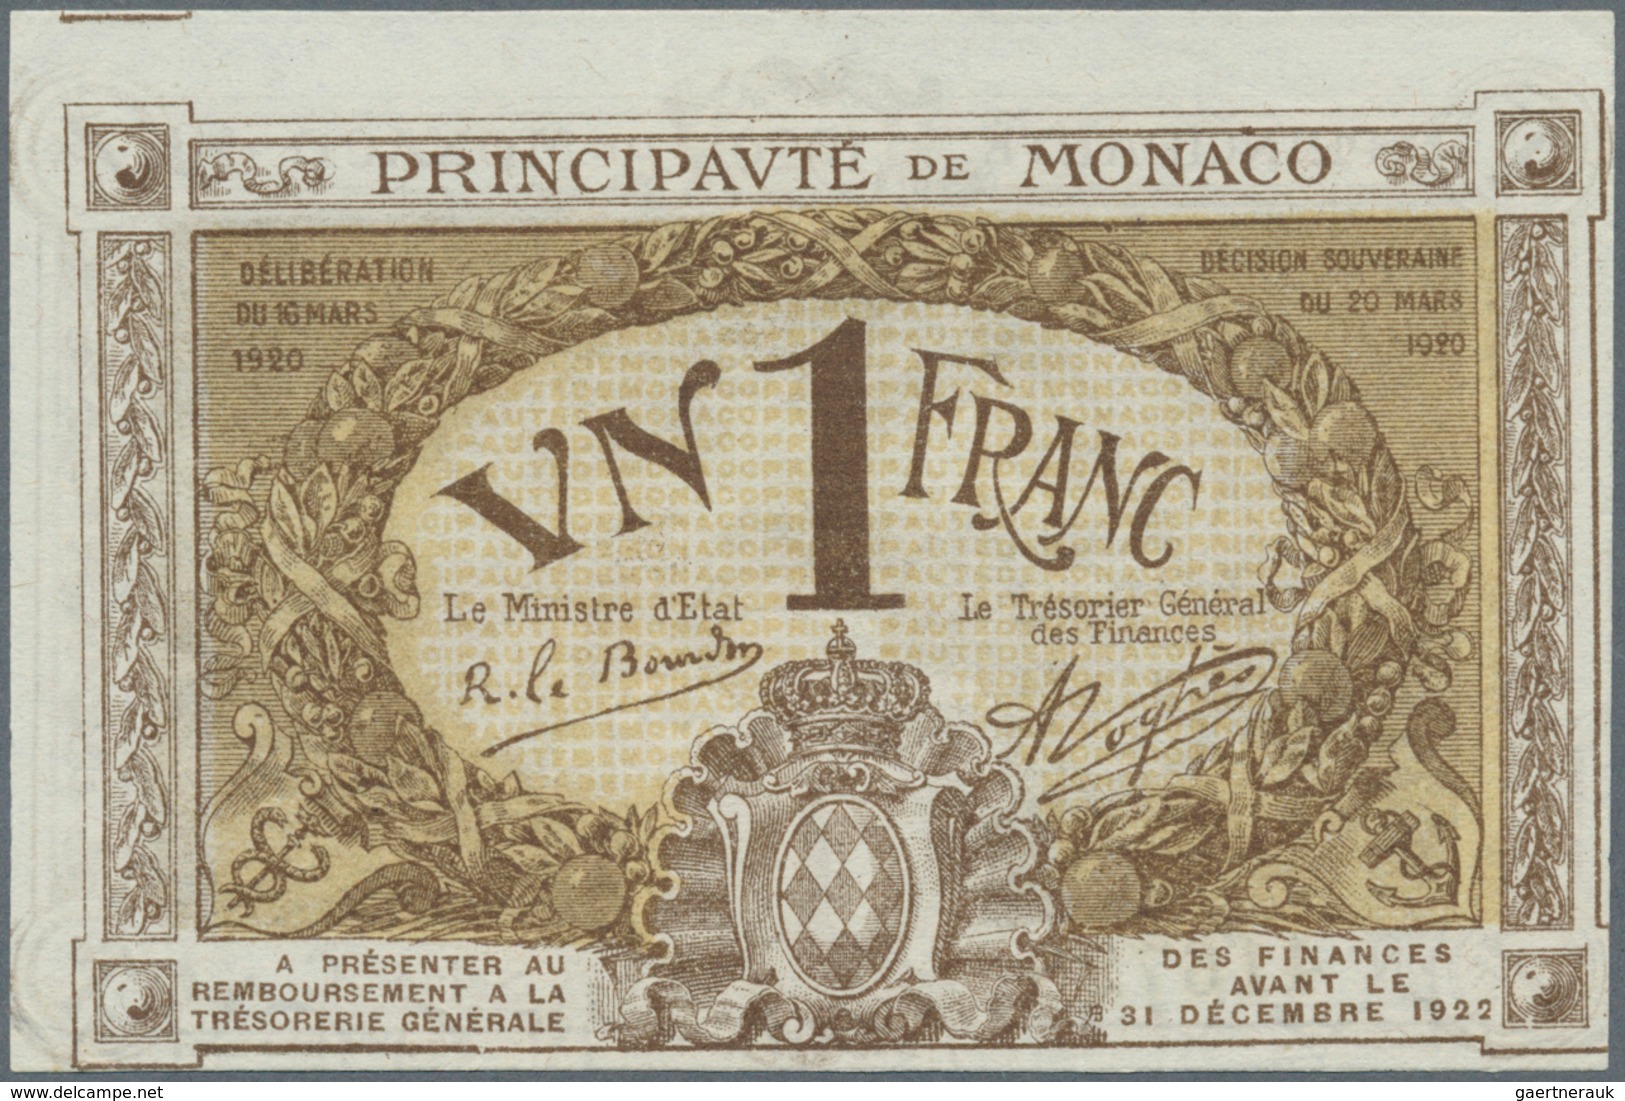 Monaco: 1 Franc 1920 P. 4 Specimen Series C, S/N 416728, Crisp Original, Light Corner Bend, Conditio - Monaco